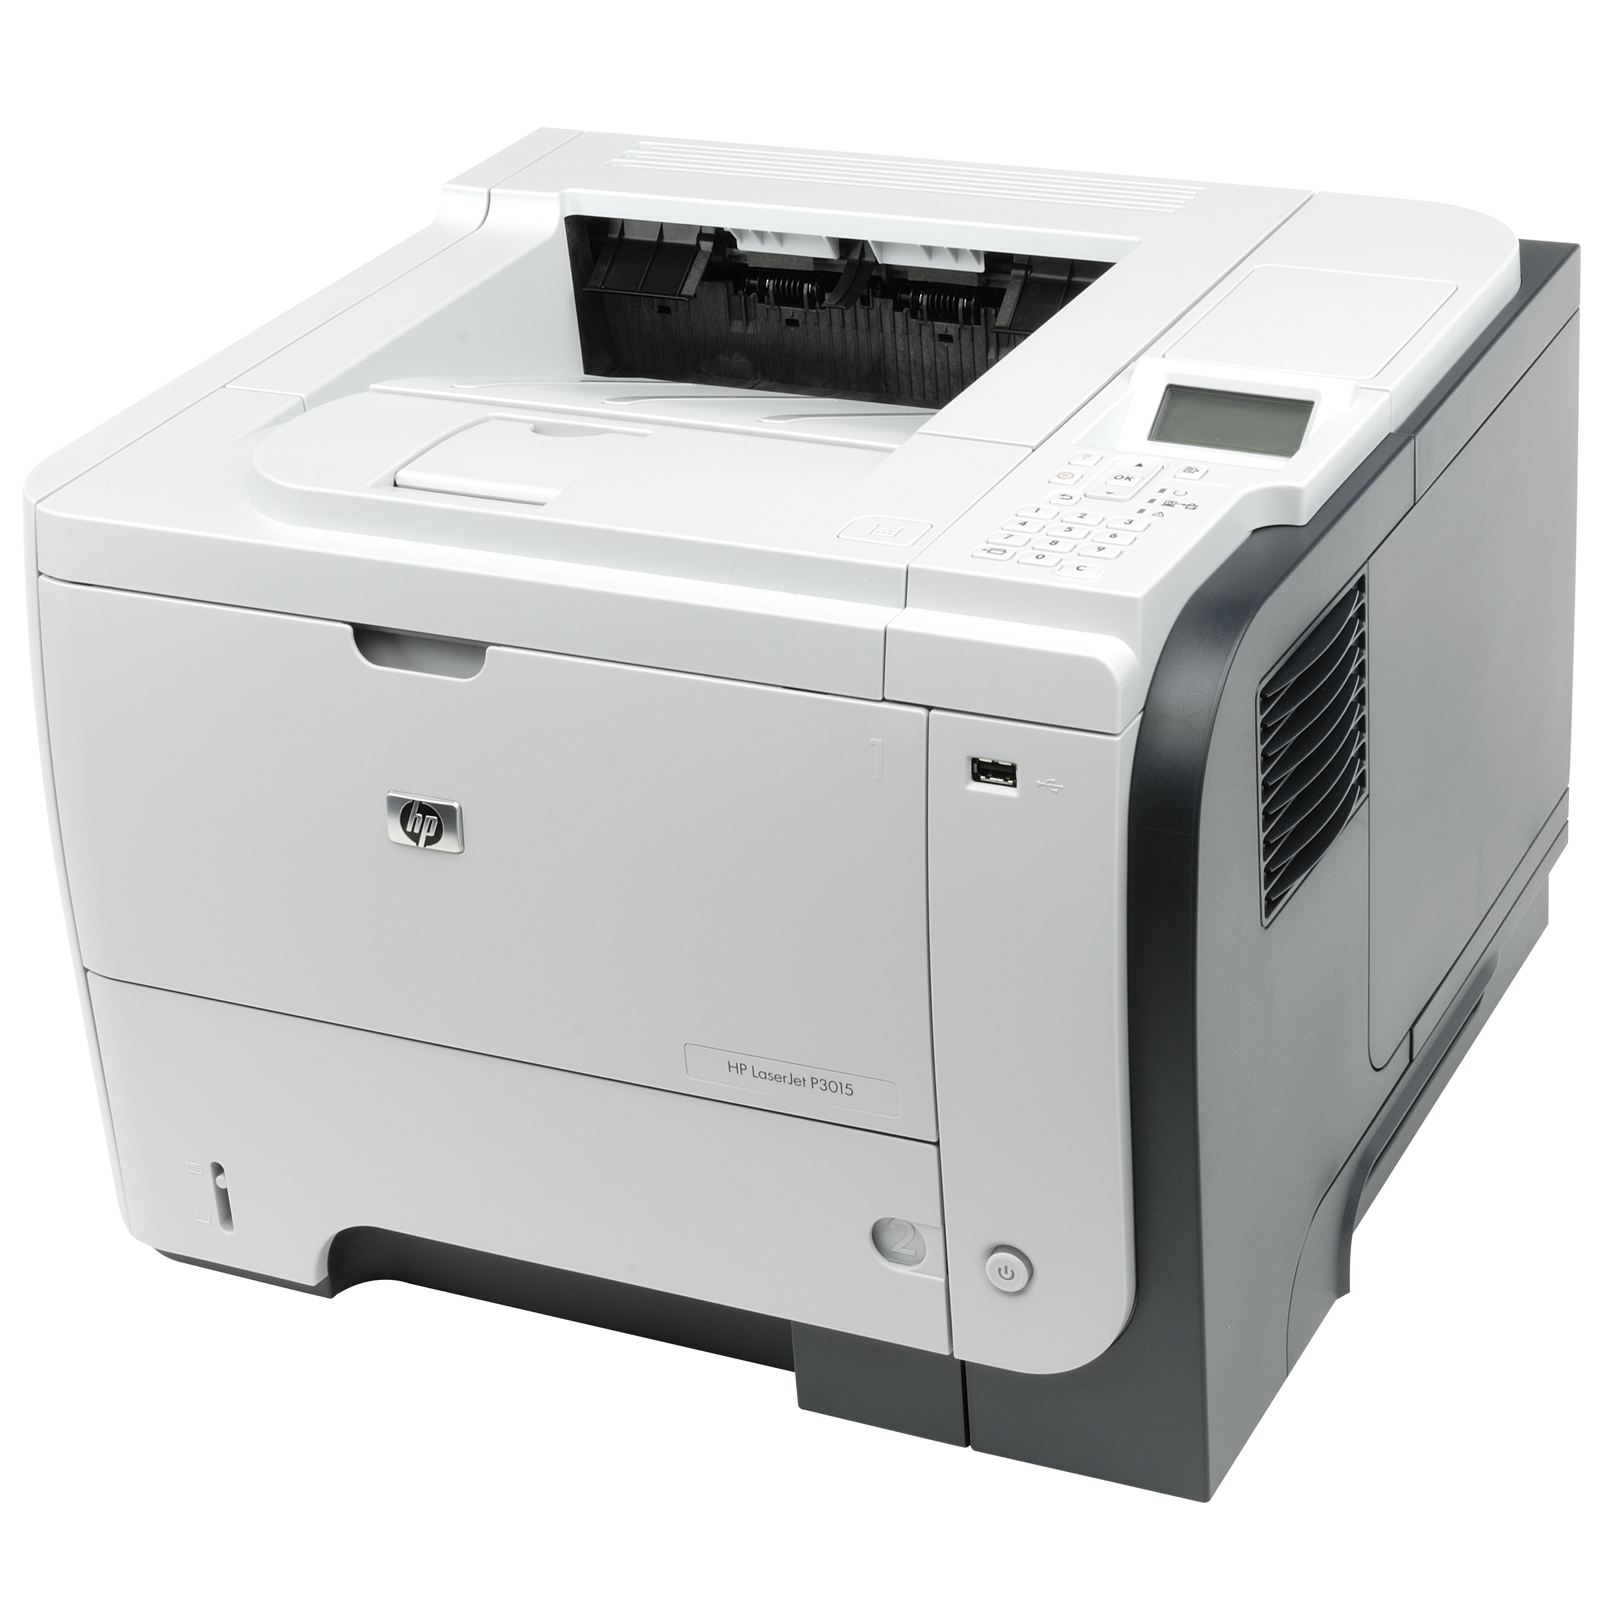 Заправка картриджа принтера HP Laser Jet P3015 Enterprise